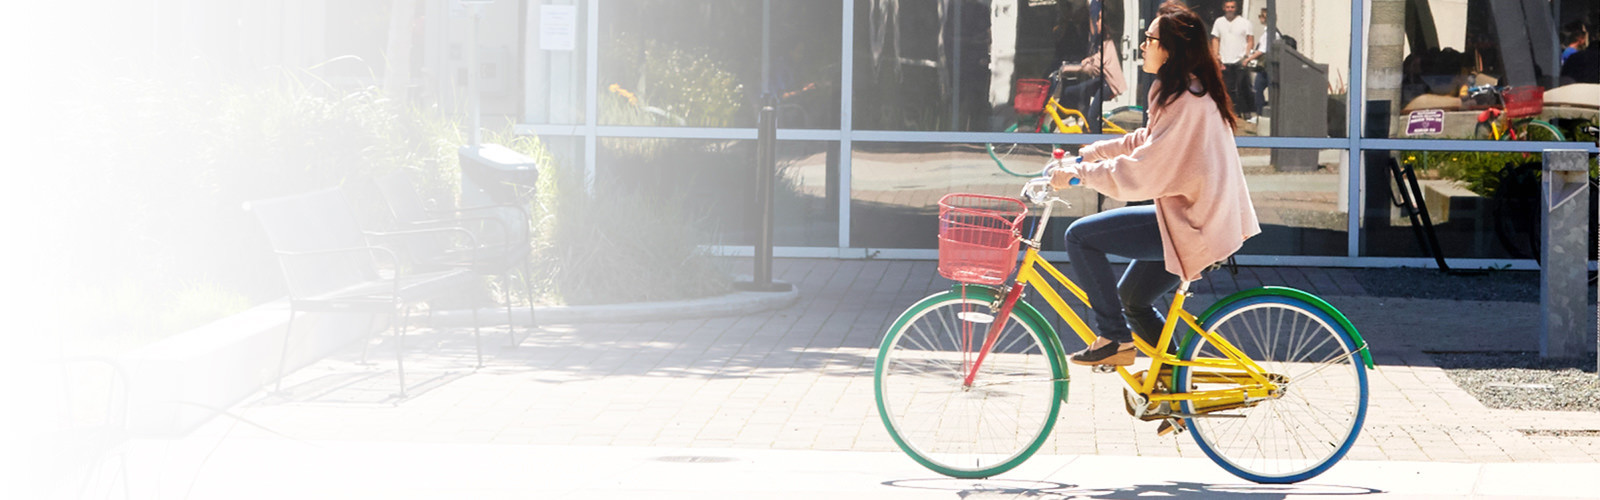 mujer montando en bicicleta en una calle de la ciudad